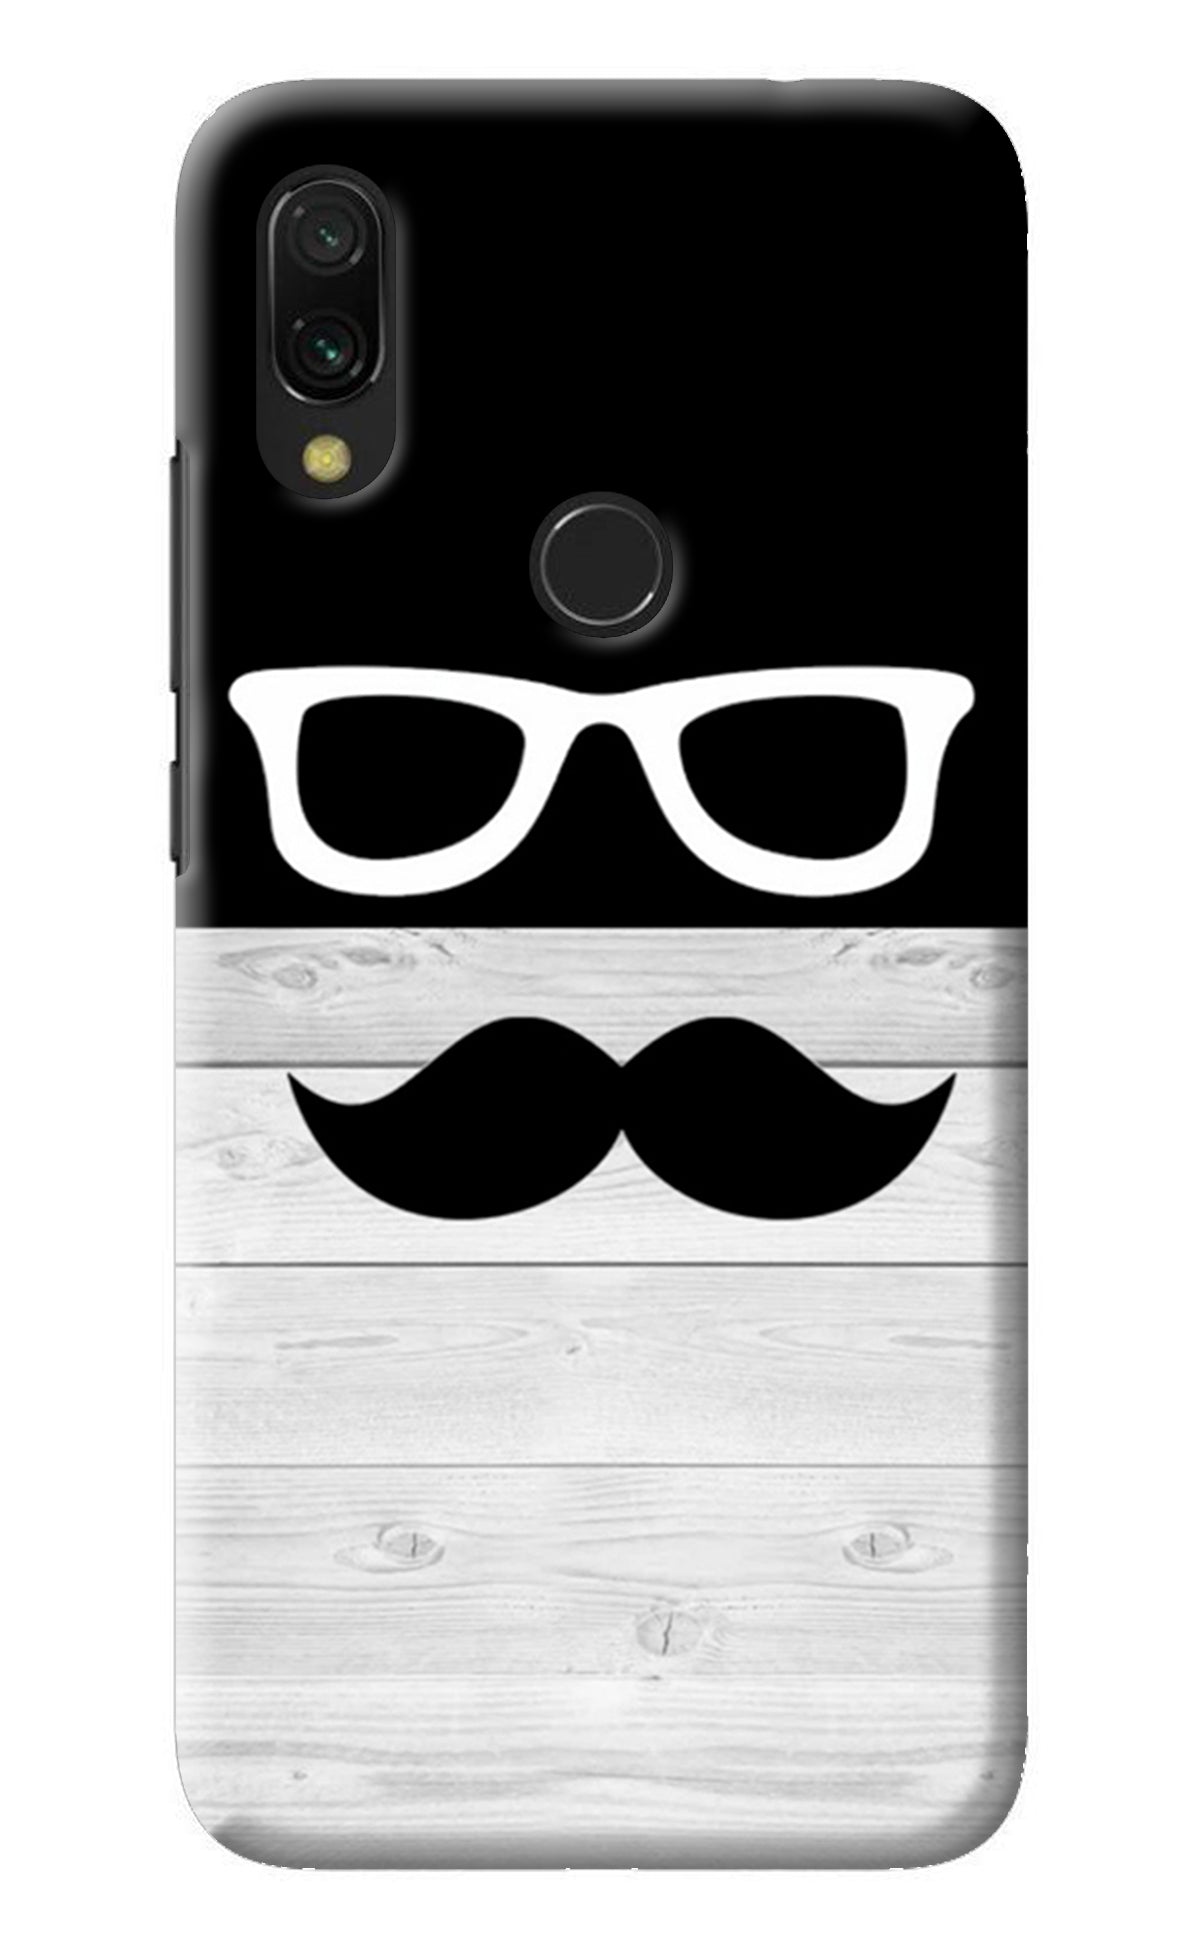 Mustache Redmi 7 Back Cover